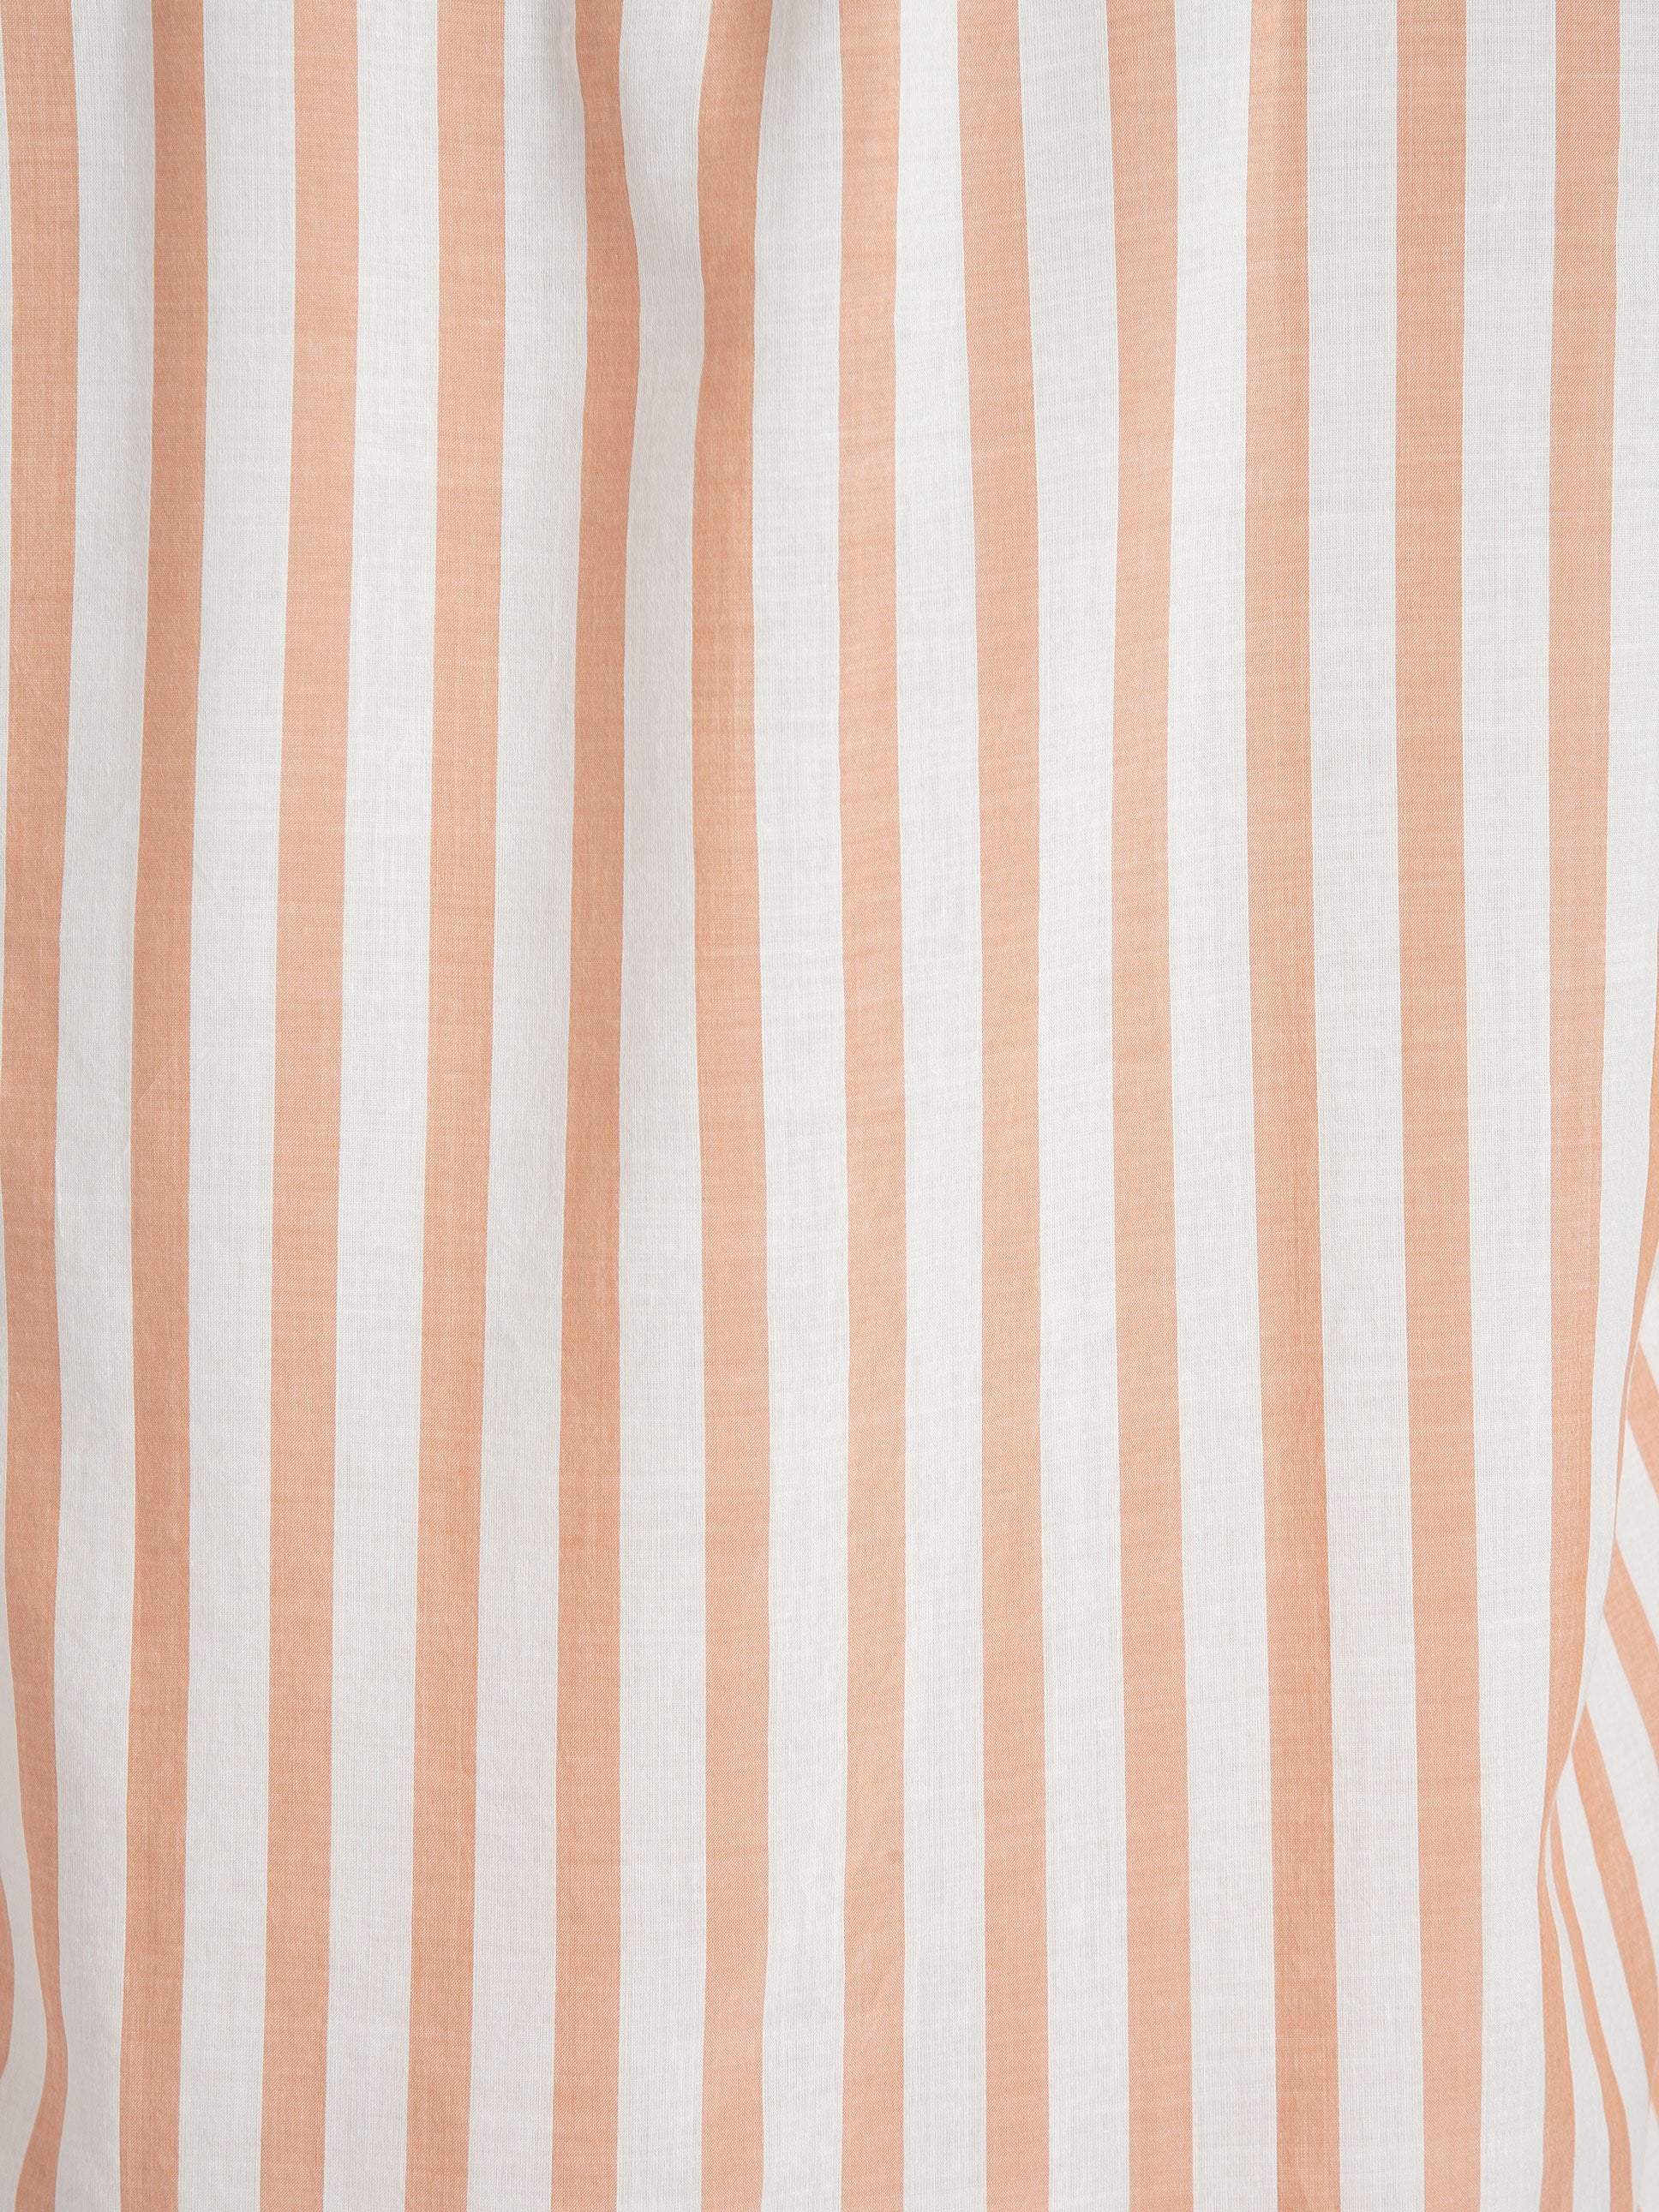 Camicia Coreana - Bianco/Arancione